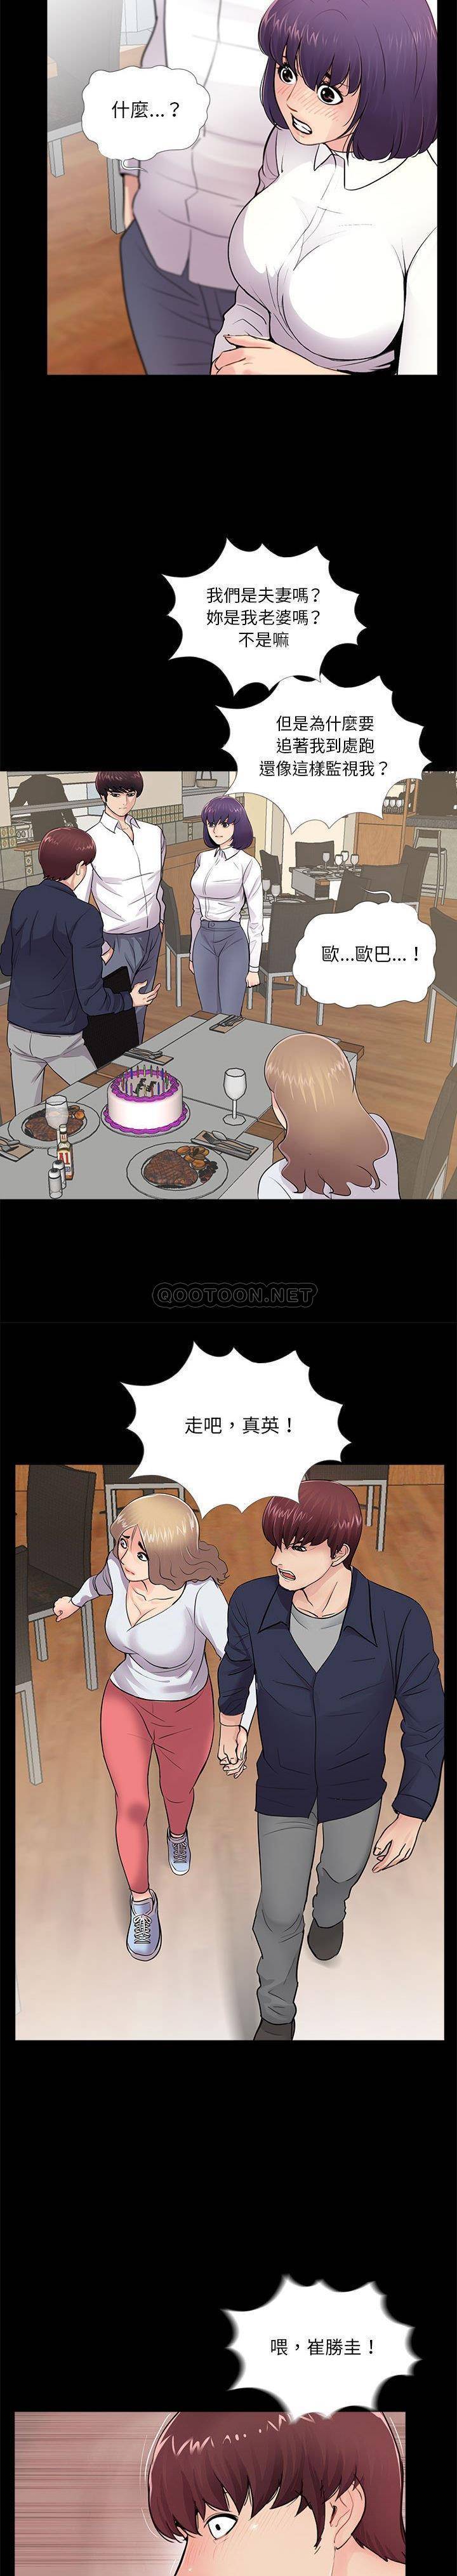 韩国污漫画 神秘復學生 第5话 16